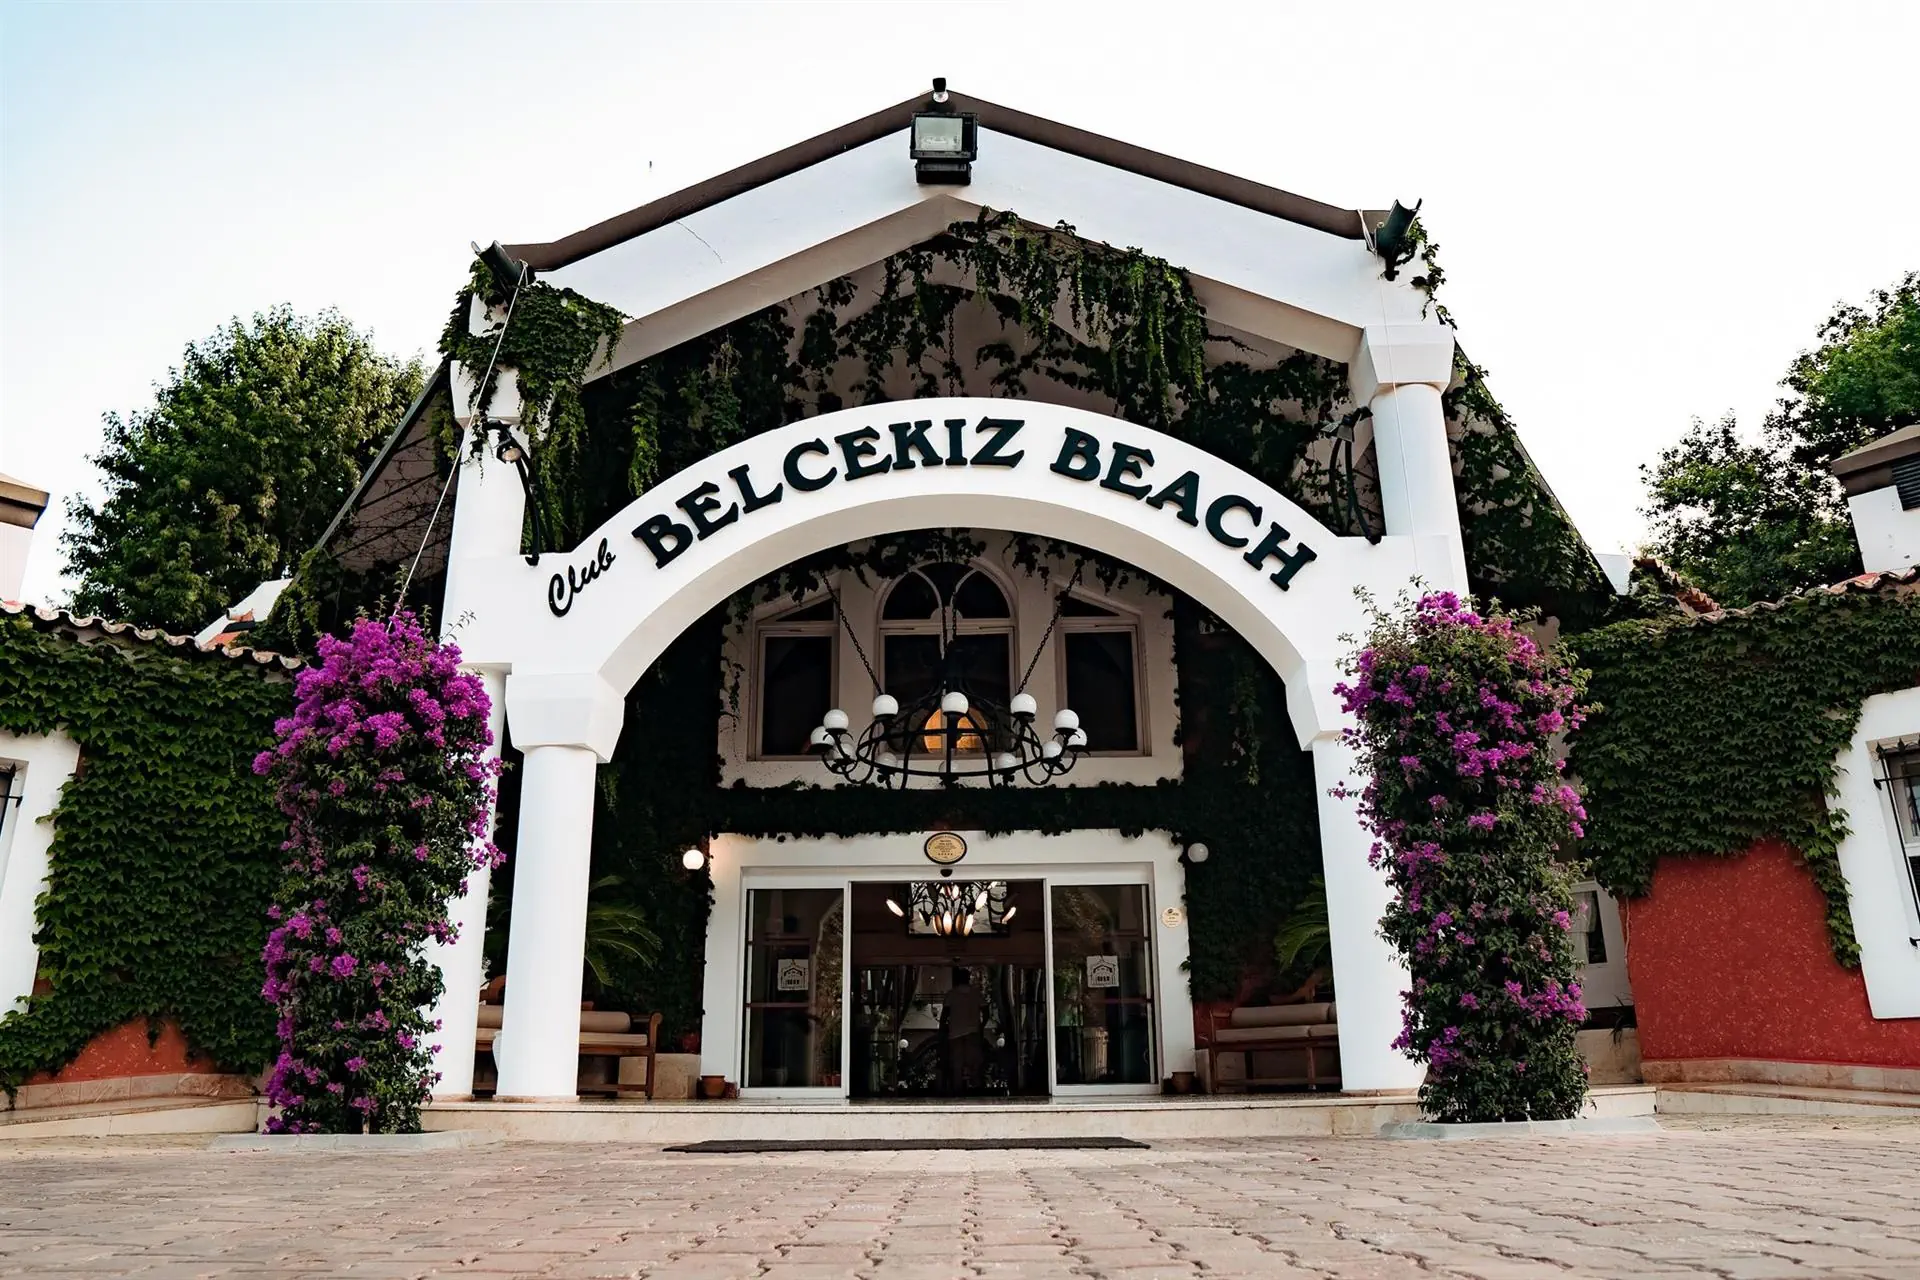 Turcja Dalaman - Fethiye Oludeniz Belcekiz Beach Club